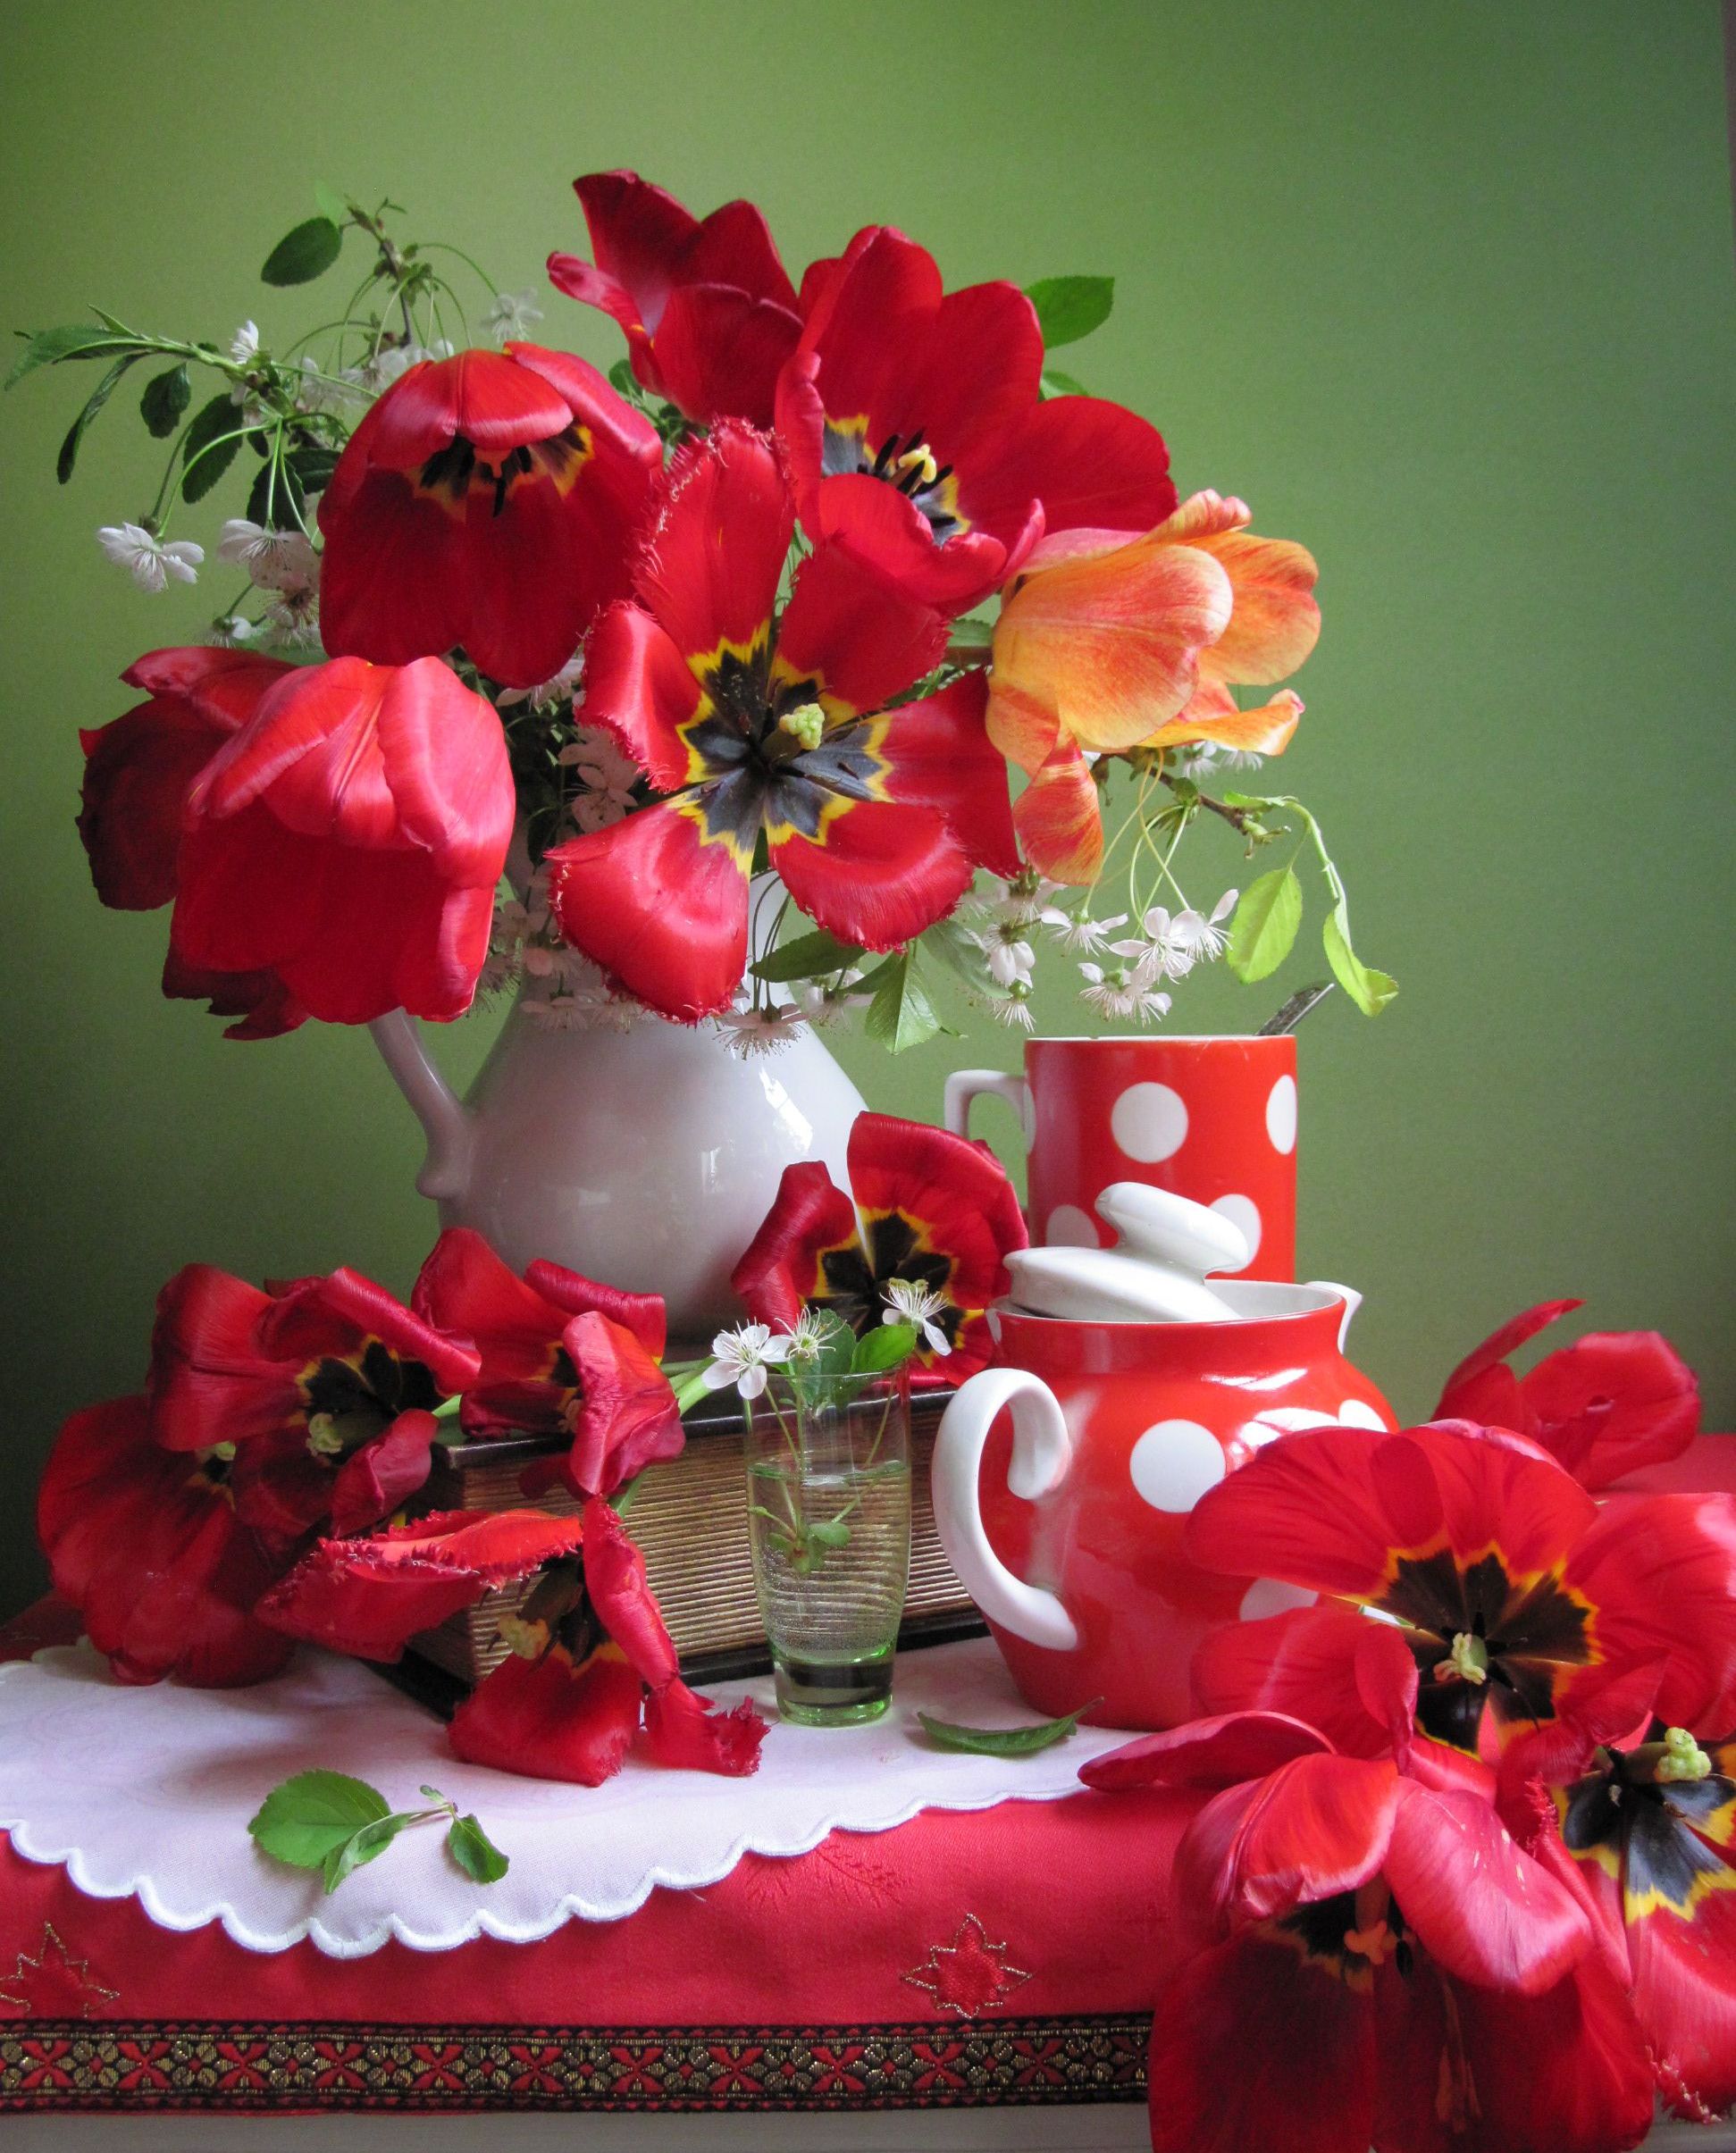 цветы, букет, тюльпаны, вишня, кувшин, кружка, чайник, скатерть, салфетка, красный цвет, Наталия Тихомирова